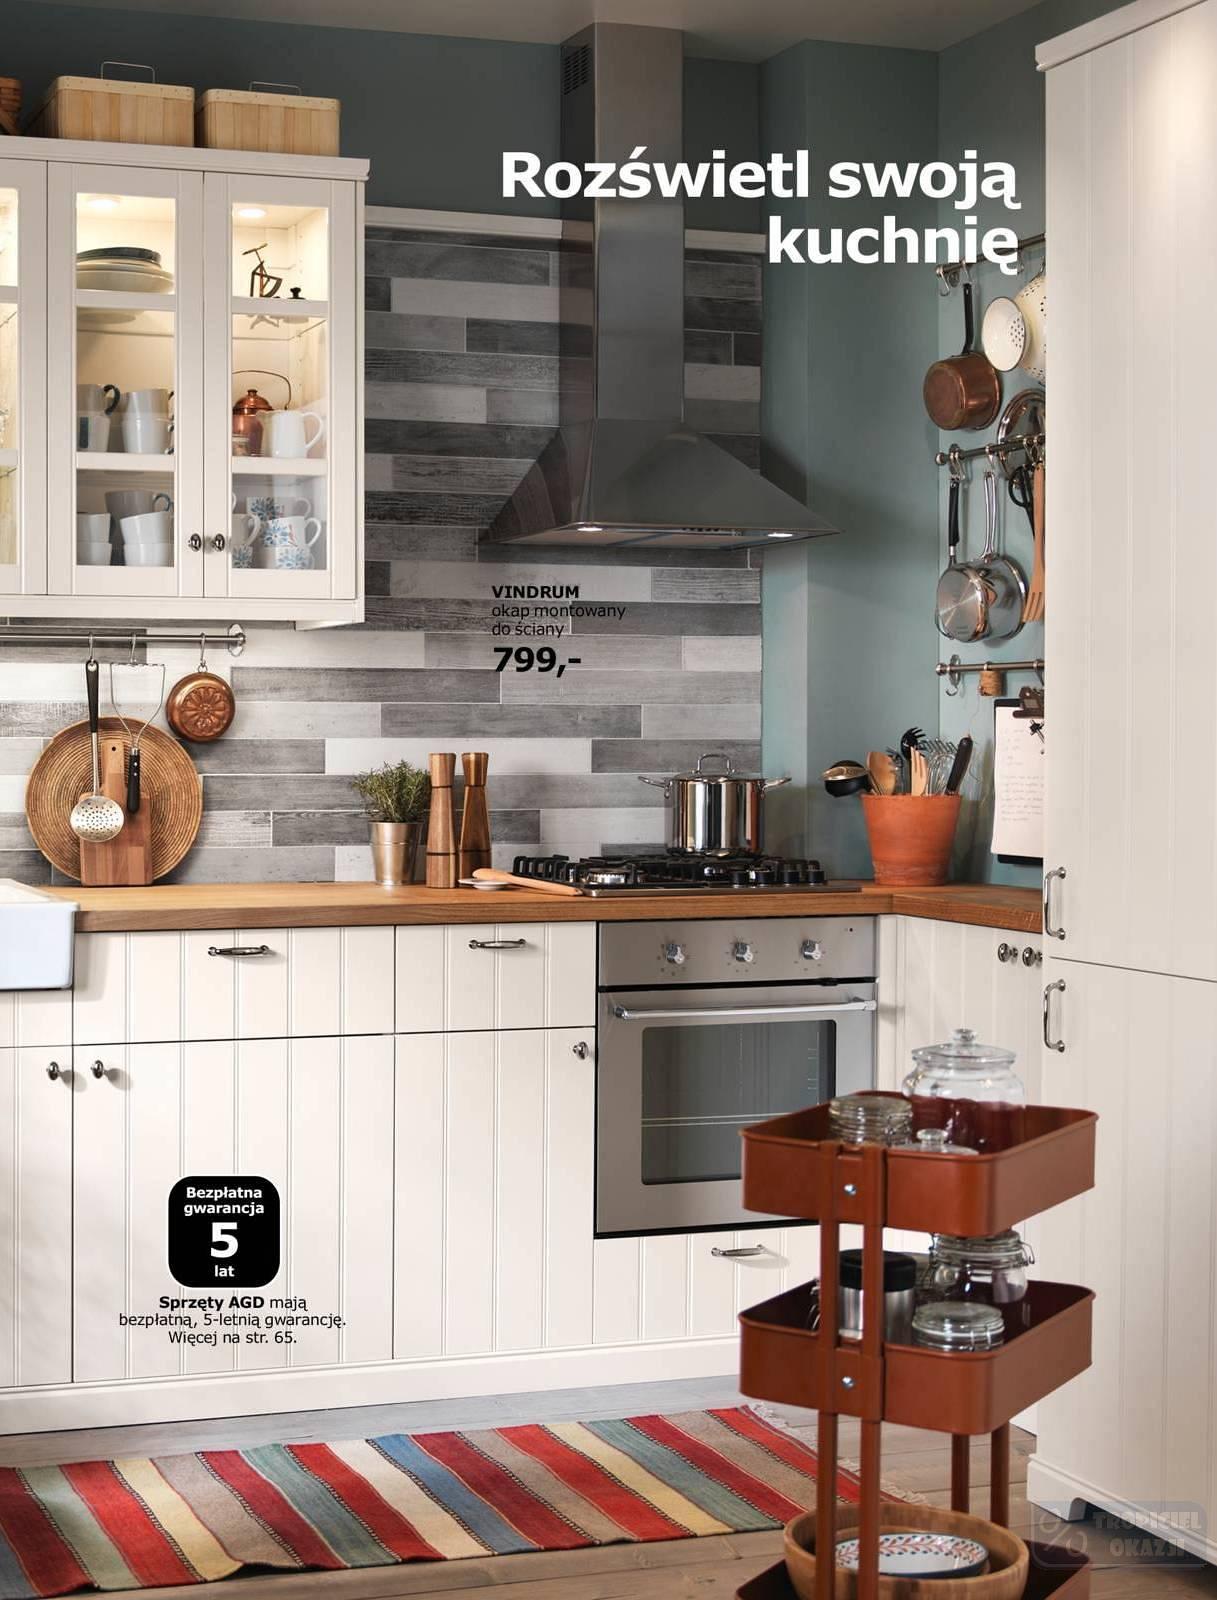 Gazetka Promocyjna I Reklamowa Ikea Katalog Kuchnie 2018 Od 12 09 2017 Do 31 01 2018 S 33